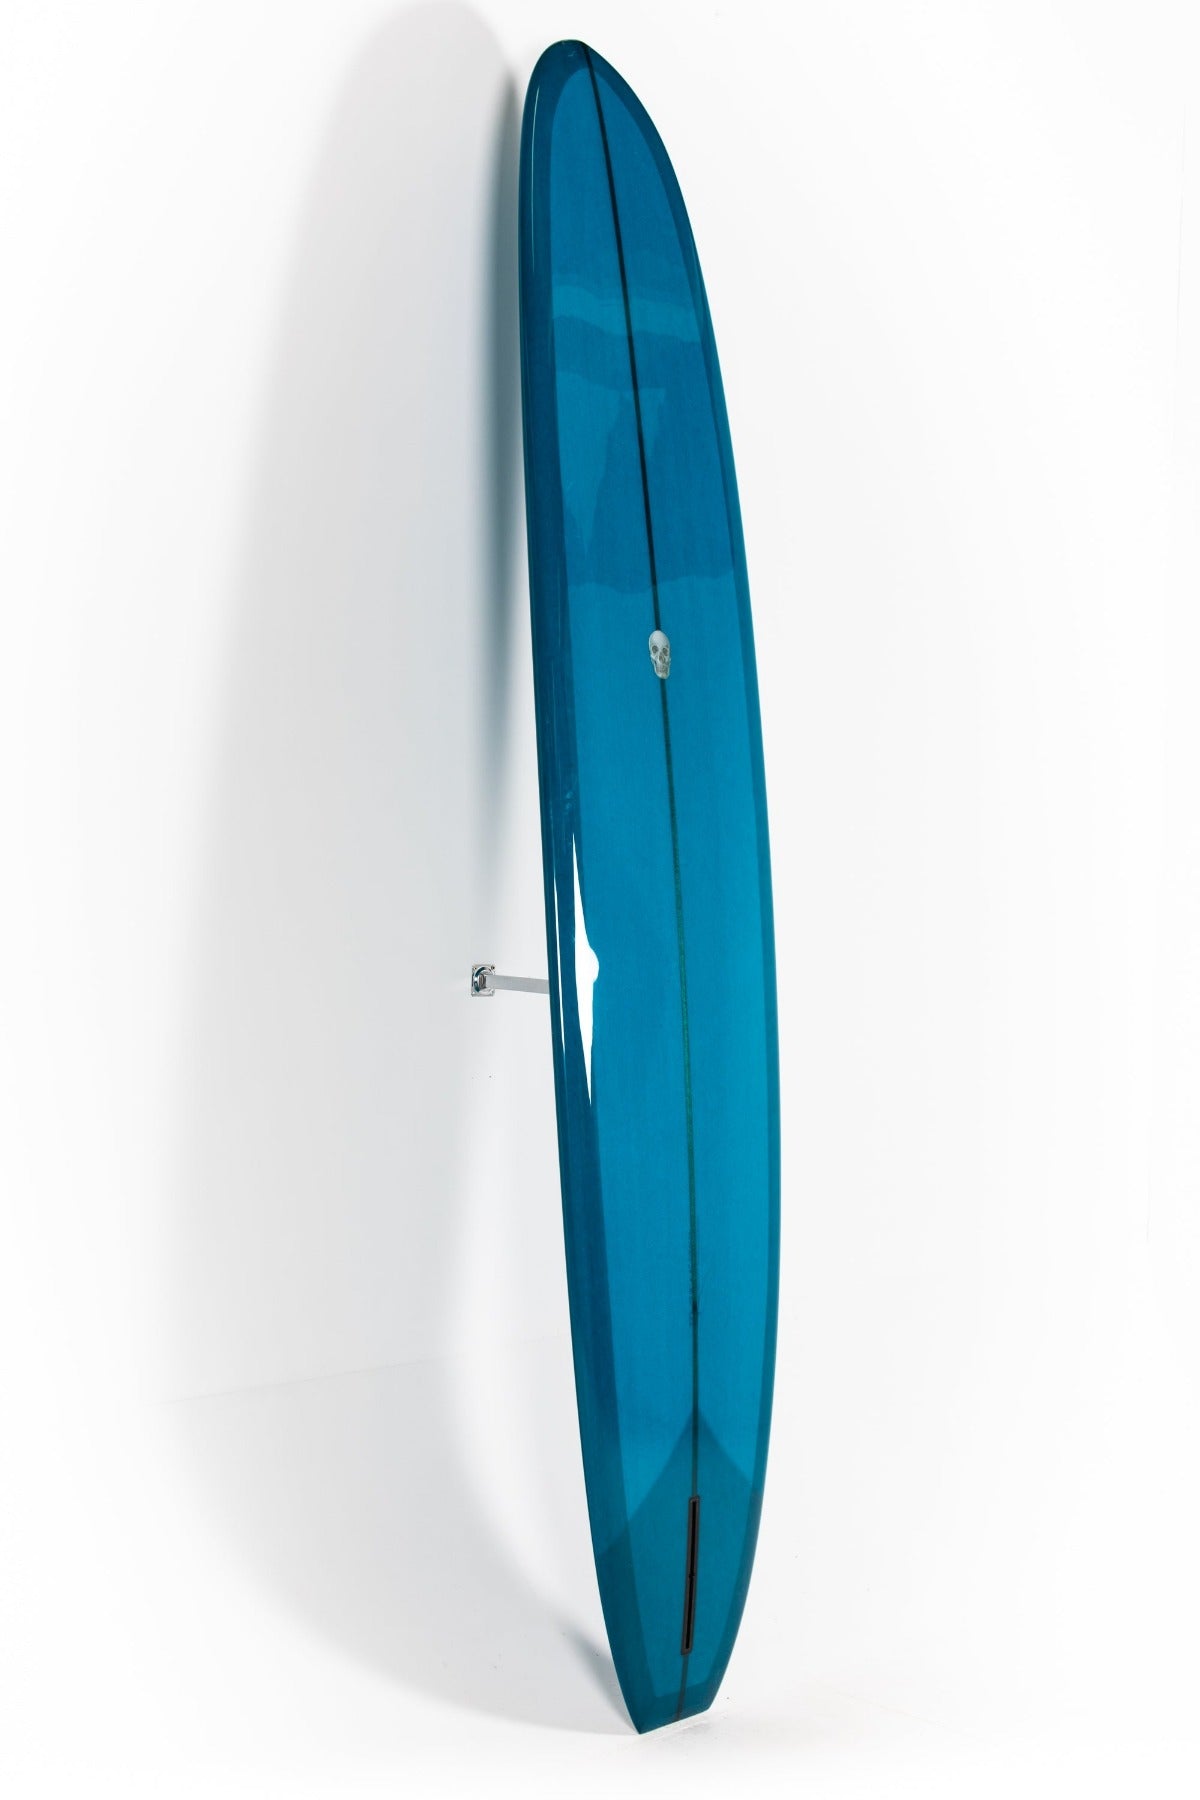 Christenson Scarlet Begonia Longboard Surfboard